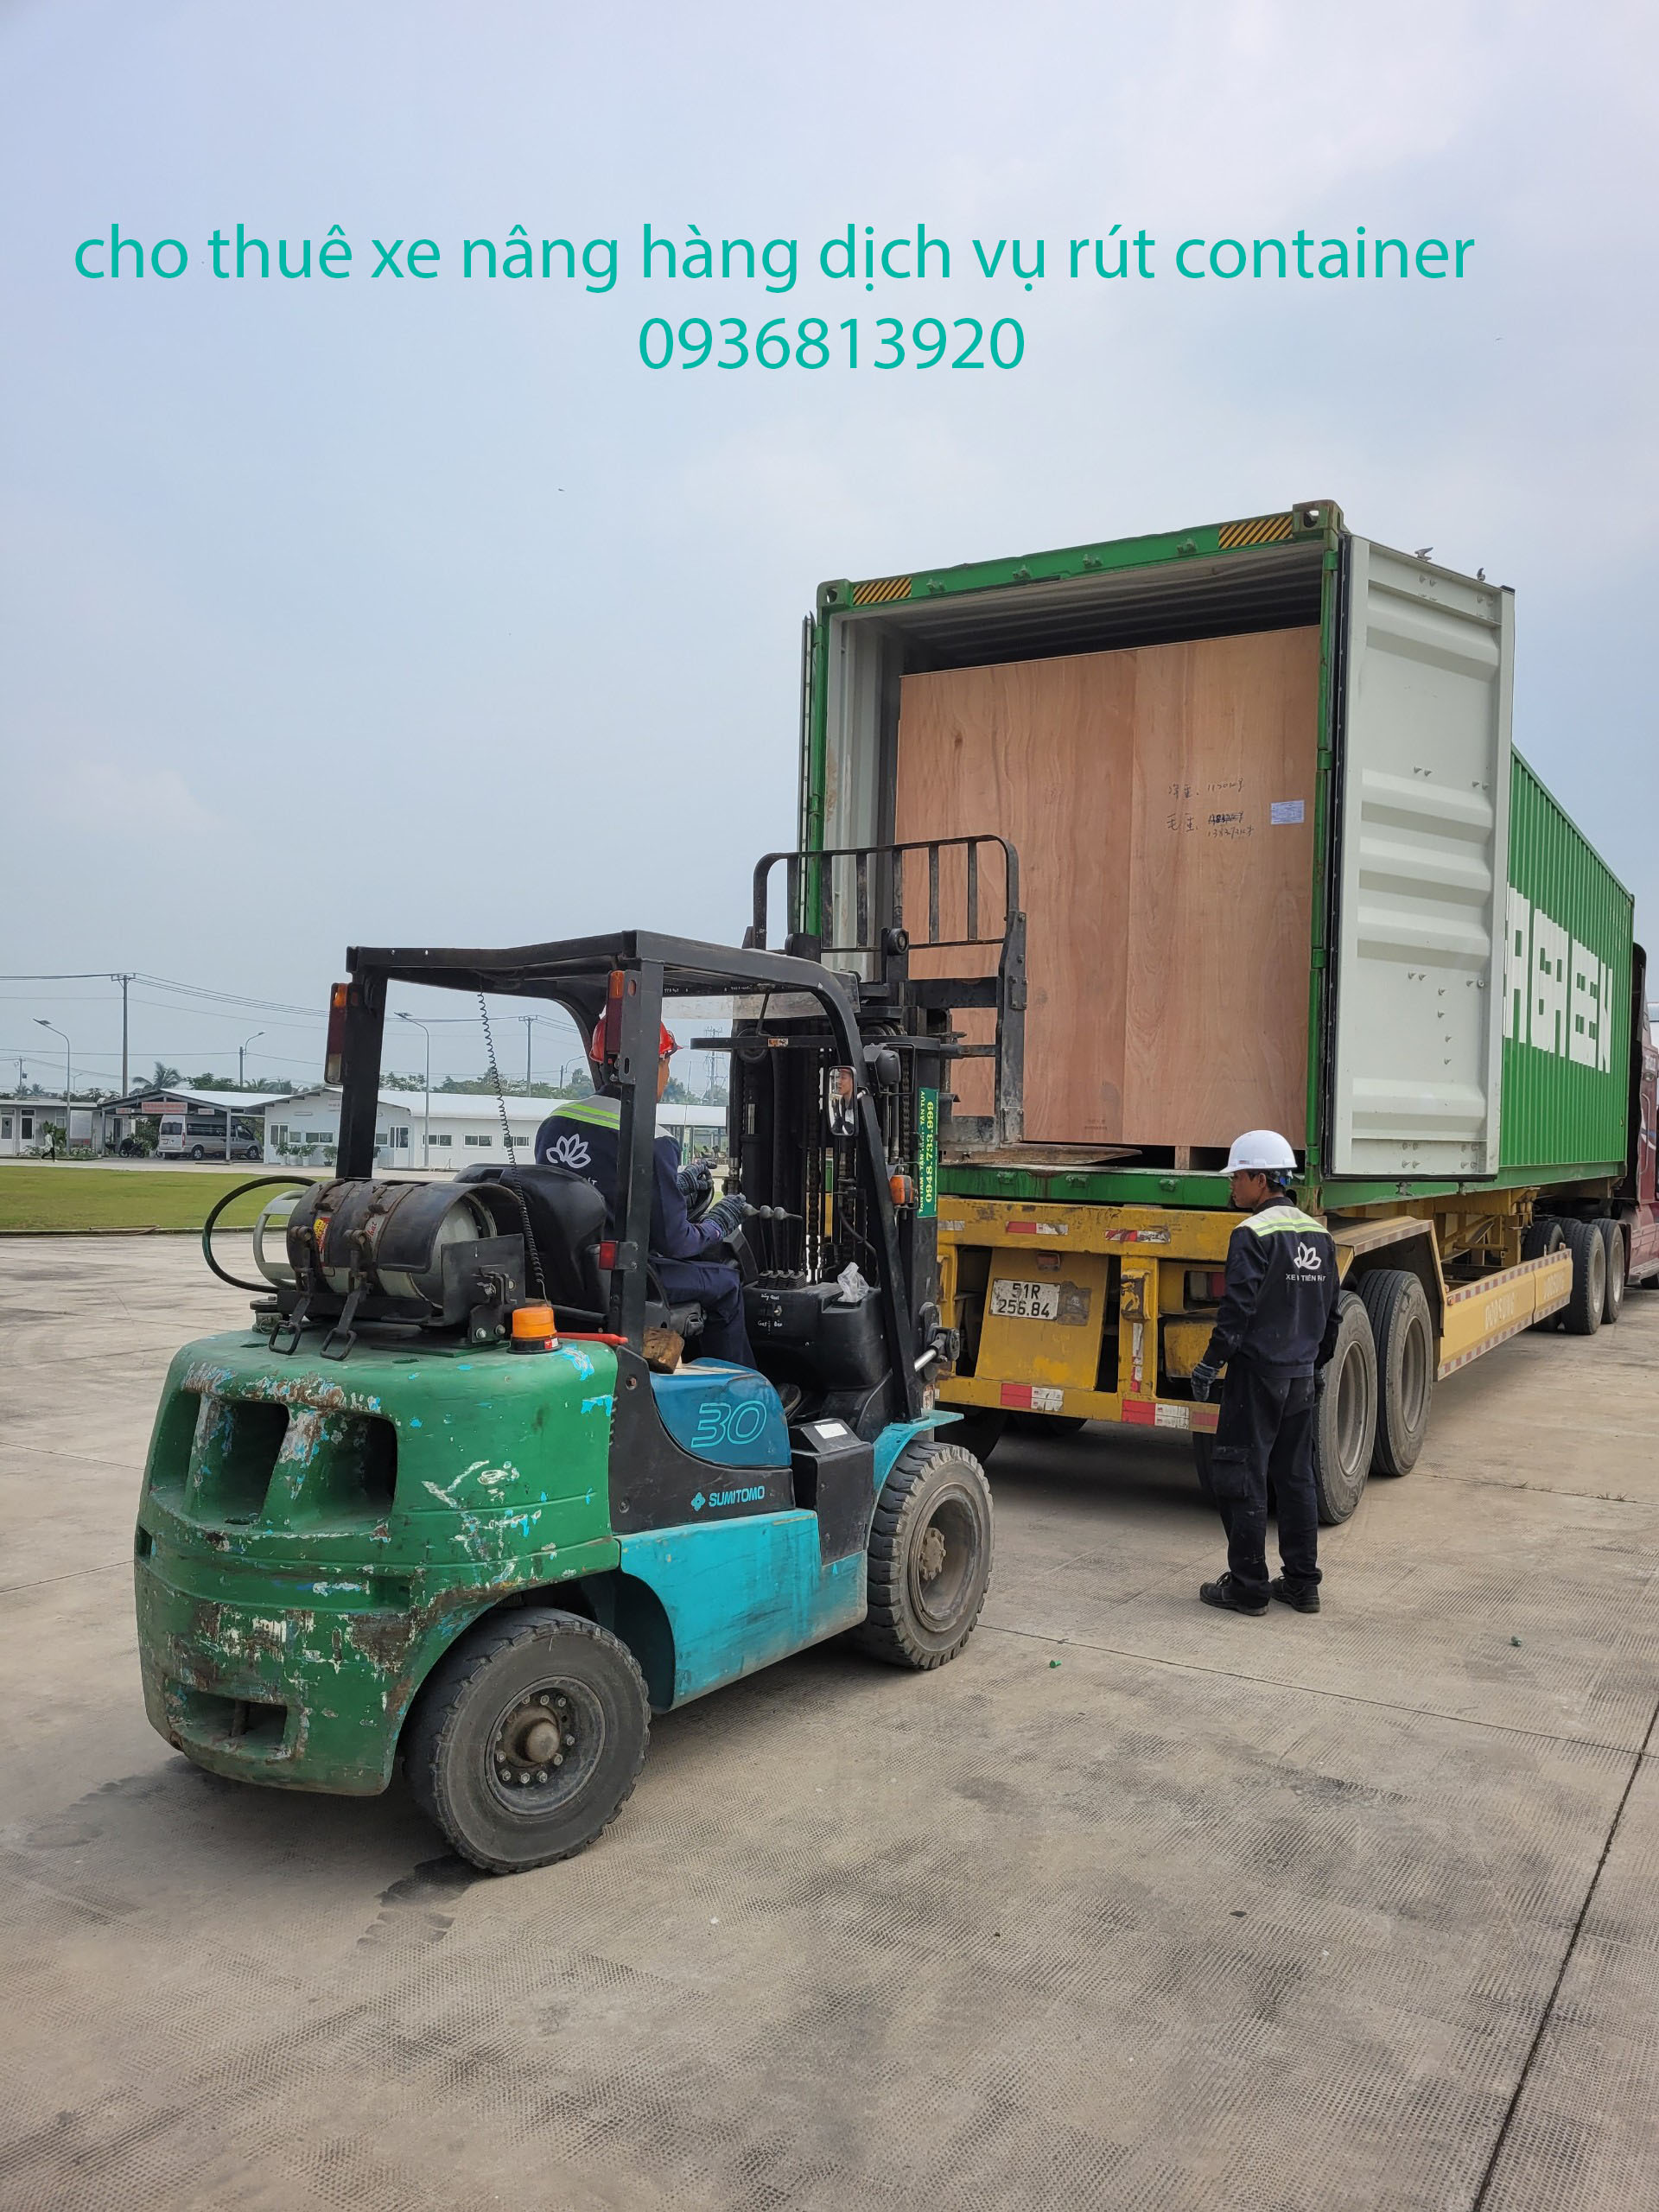 Dịch vụ rút hàng container tại Long An